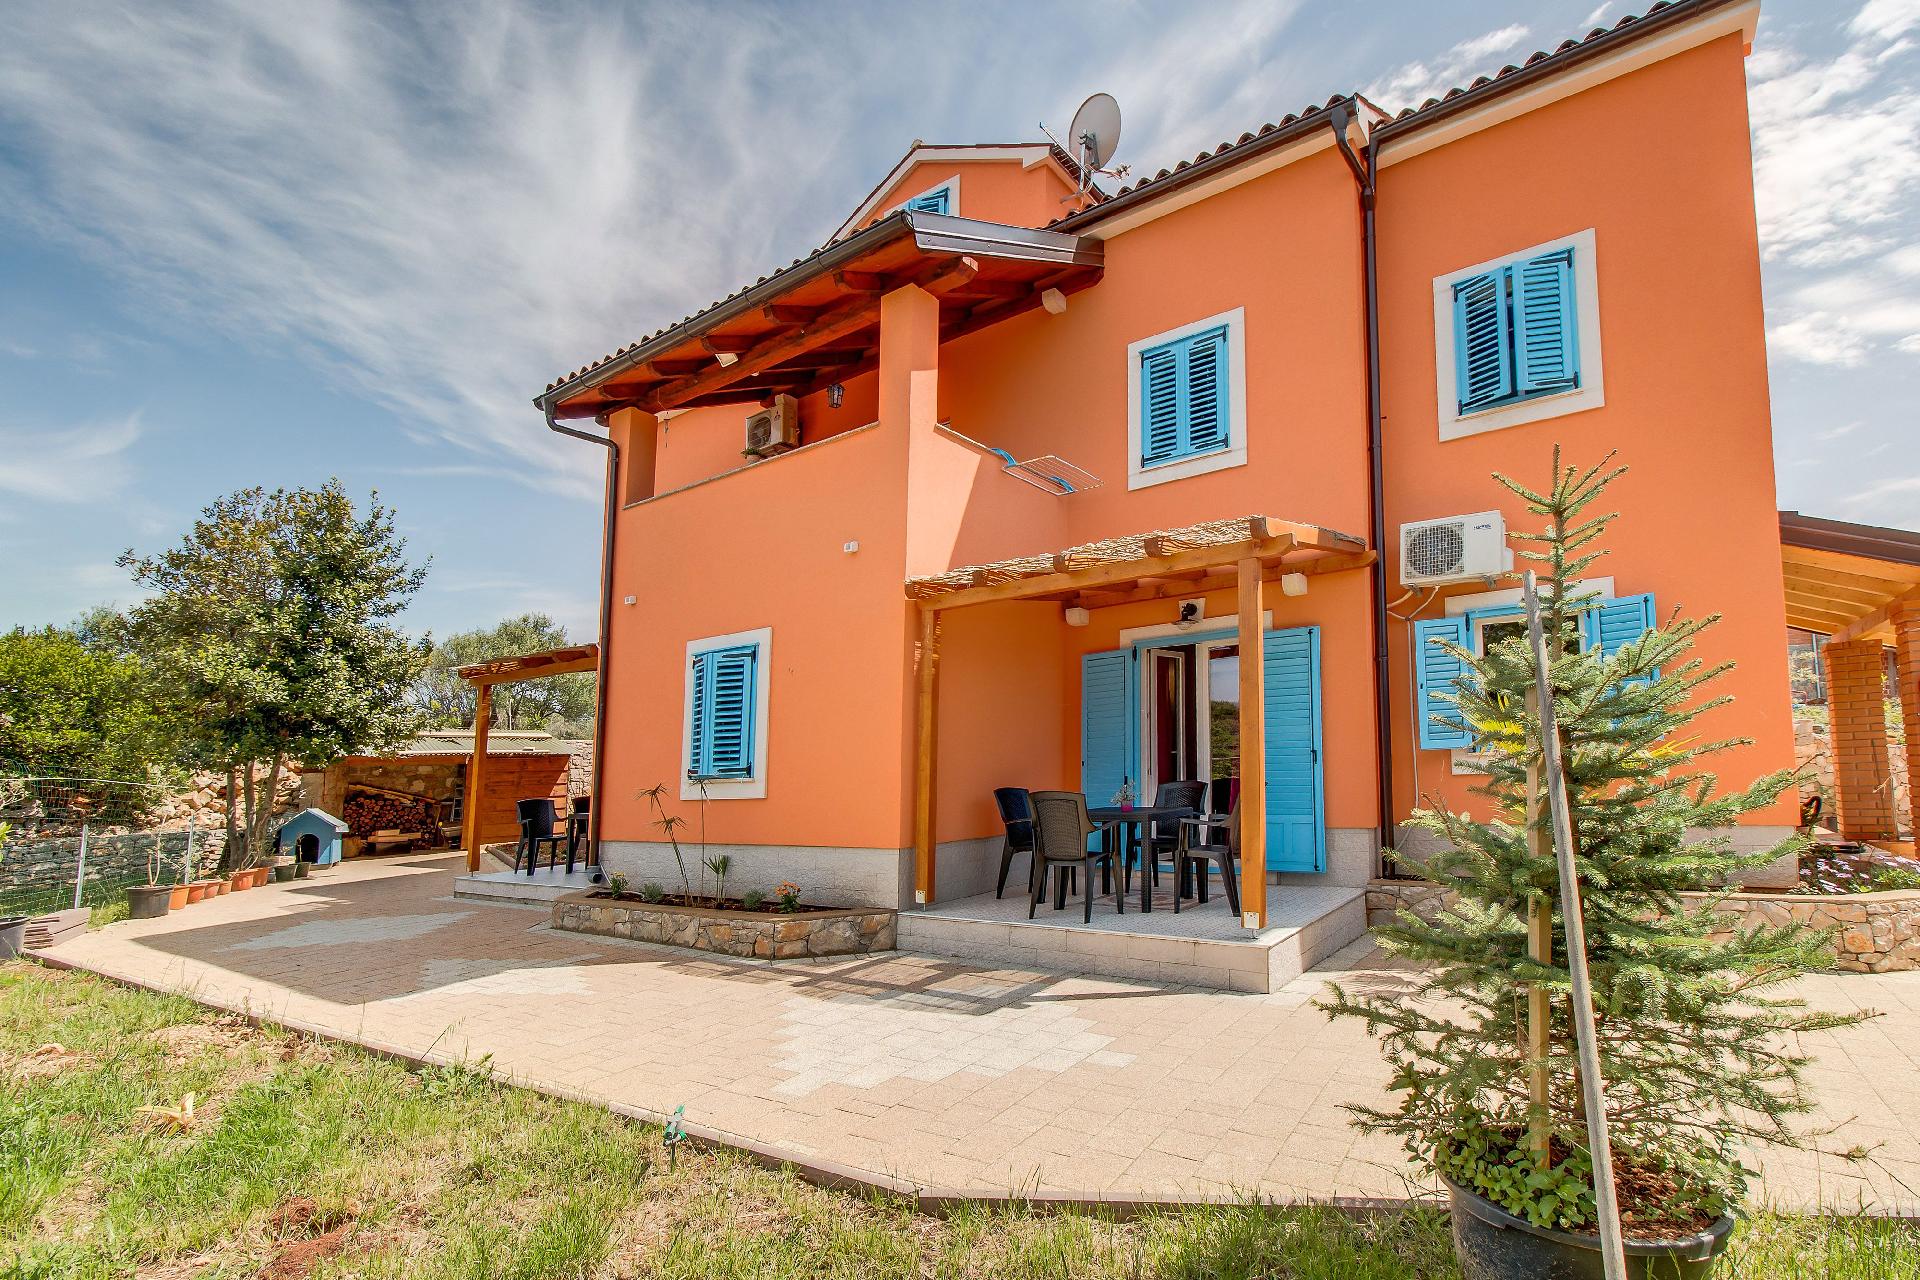 Ferienwohnung für 2 Personen ca. 40 m² i Ferienhaus in Kroatien